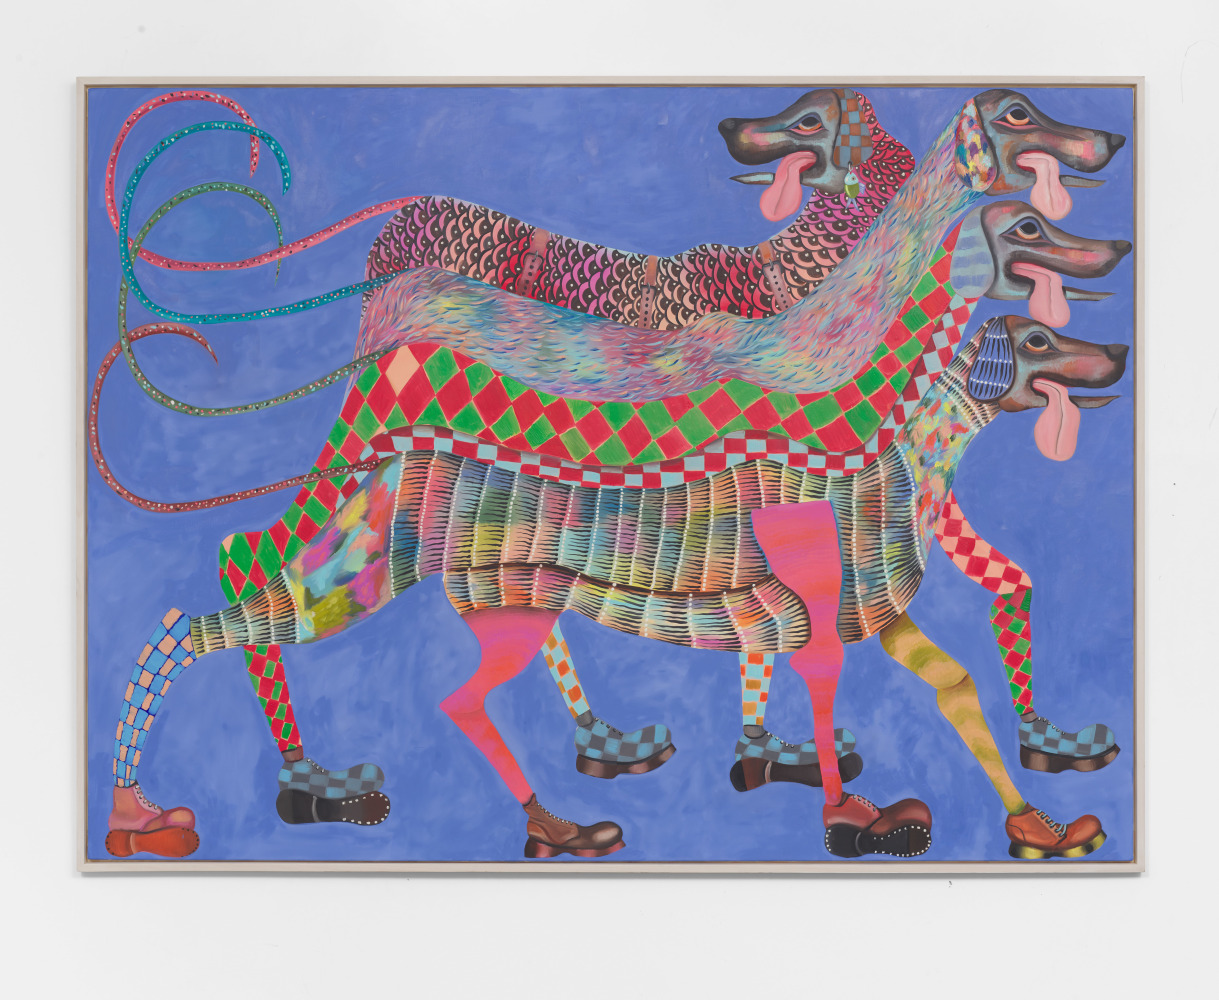 Krystof Strejc
Doggy Dogz, 2021
Oil on canvas
66.93h x 90.55w in
170h x 230w cm